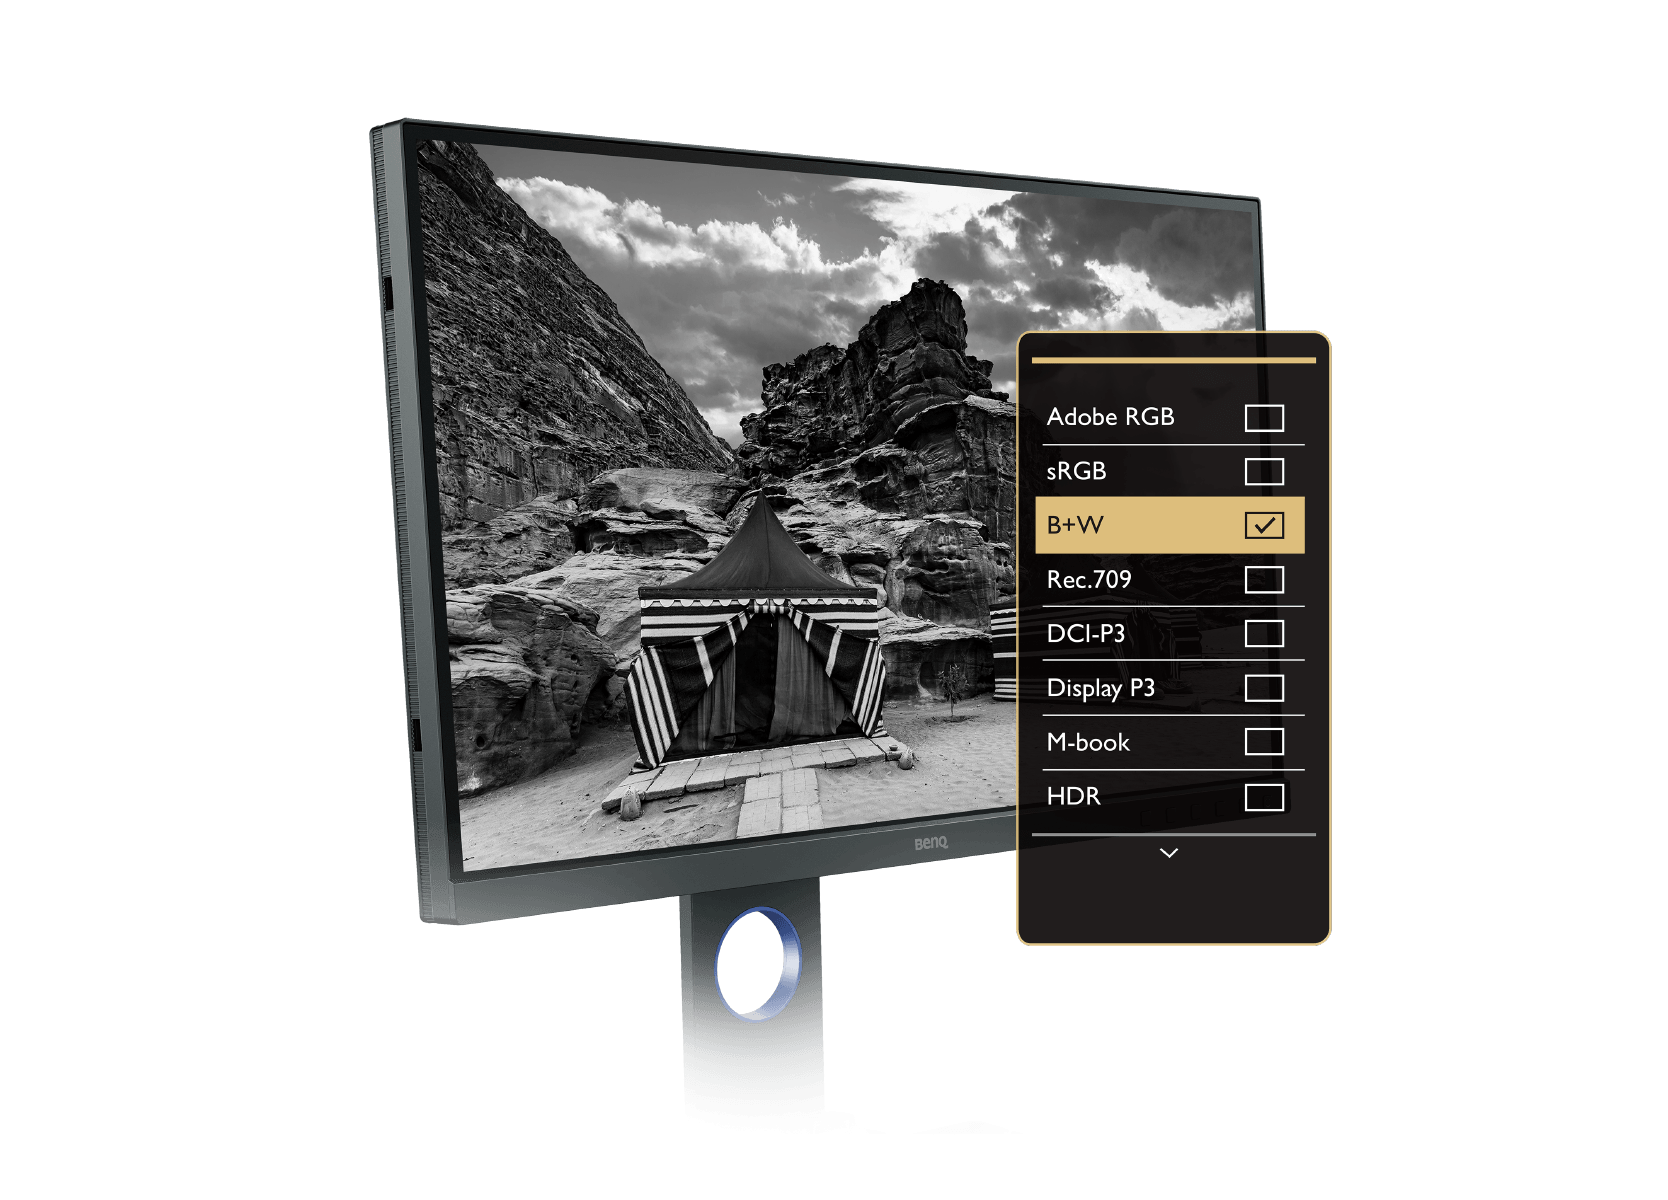 El monitor para fotógrafos de benq proporciona un modo avanzado en blanco y negro para obtener una vista previa de las fotos en color en cualquiera de las tres configuraciones predeterminadas en blanco y negro antes de editarlas